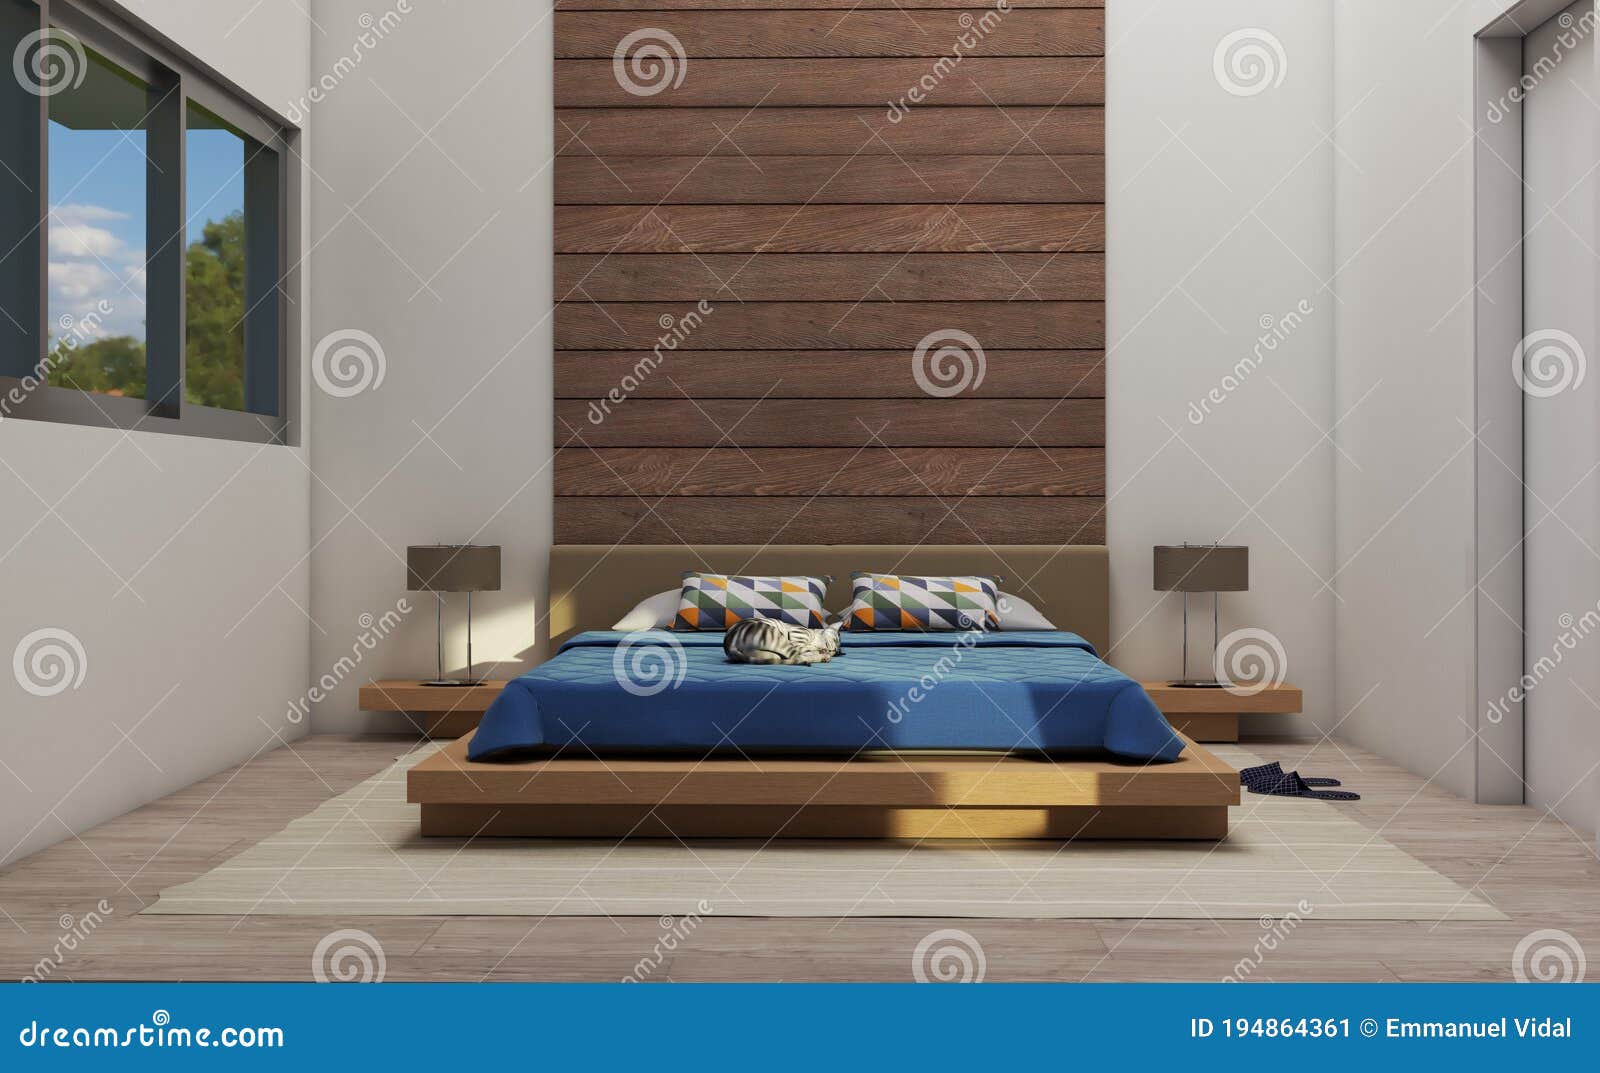 nordic main bedroom 1 3d rendering 3d 